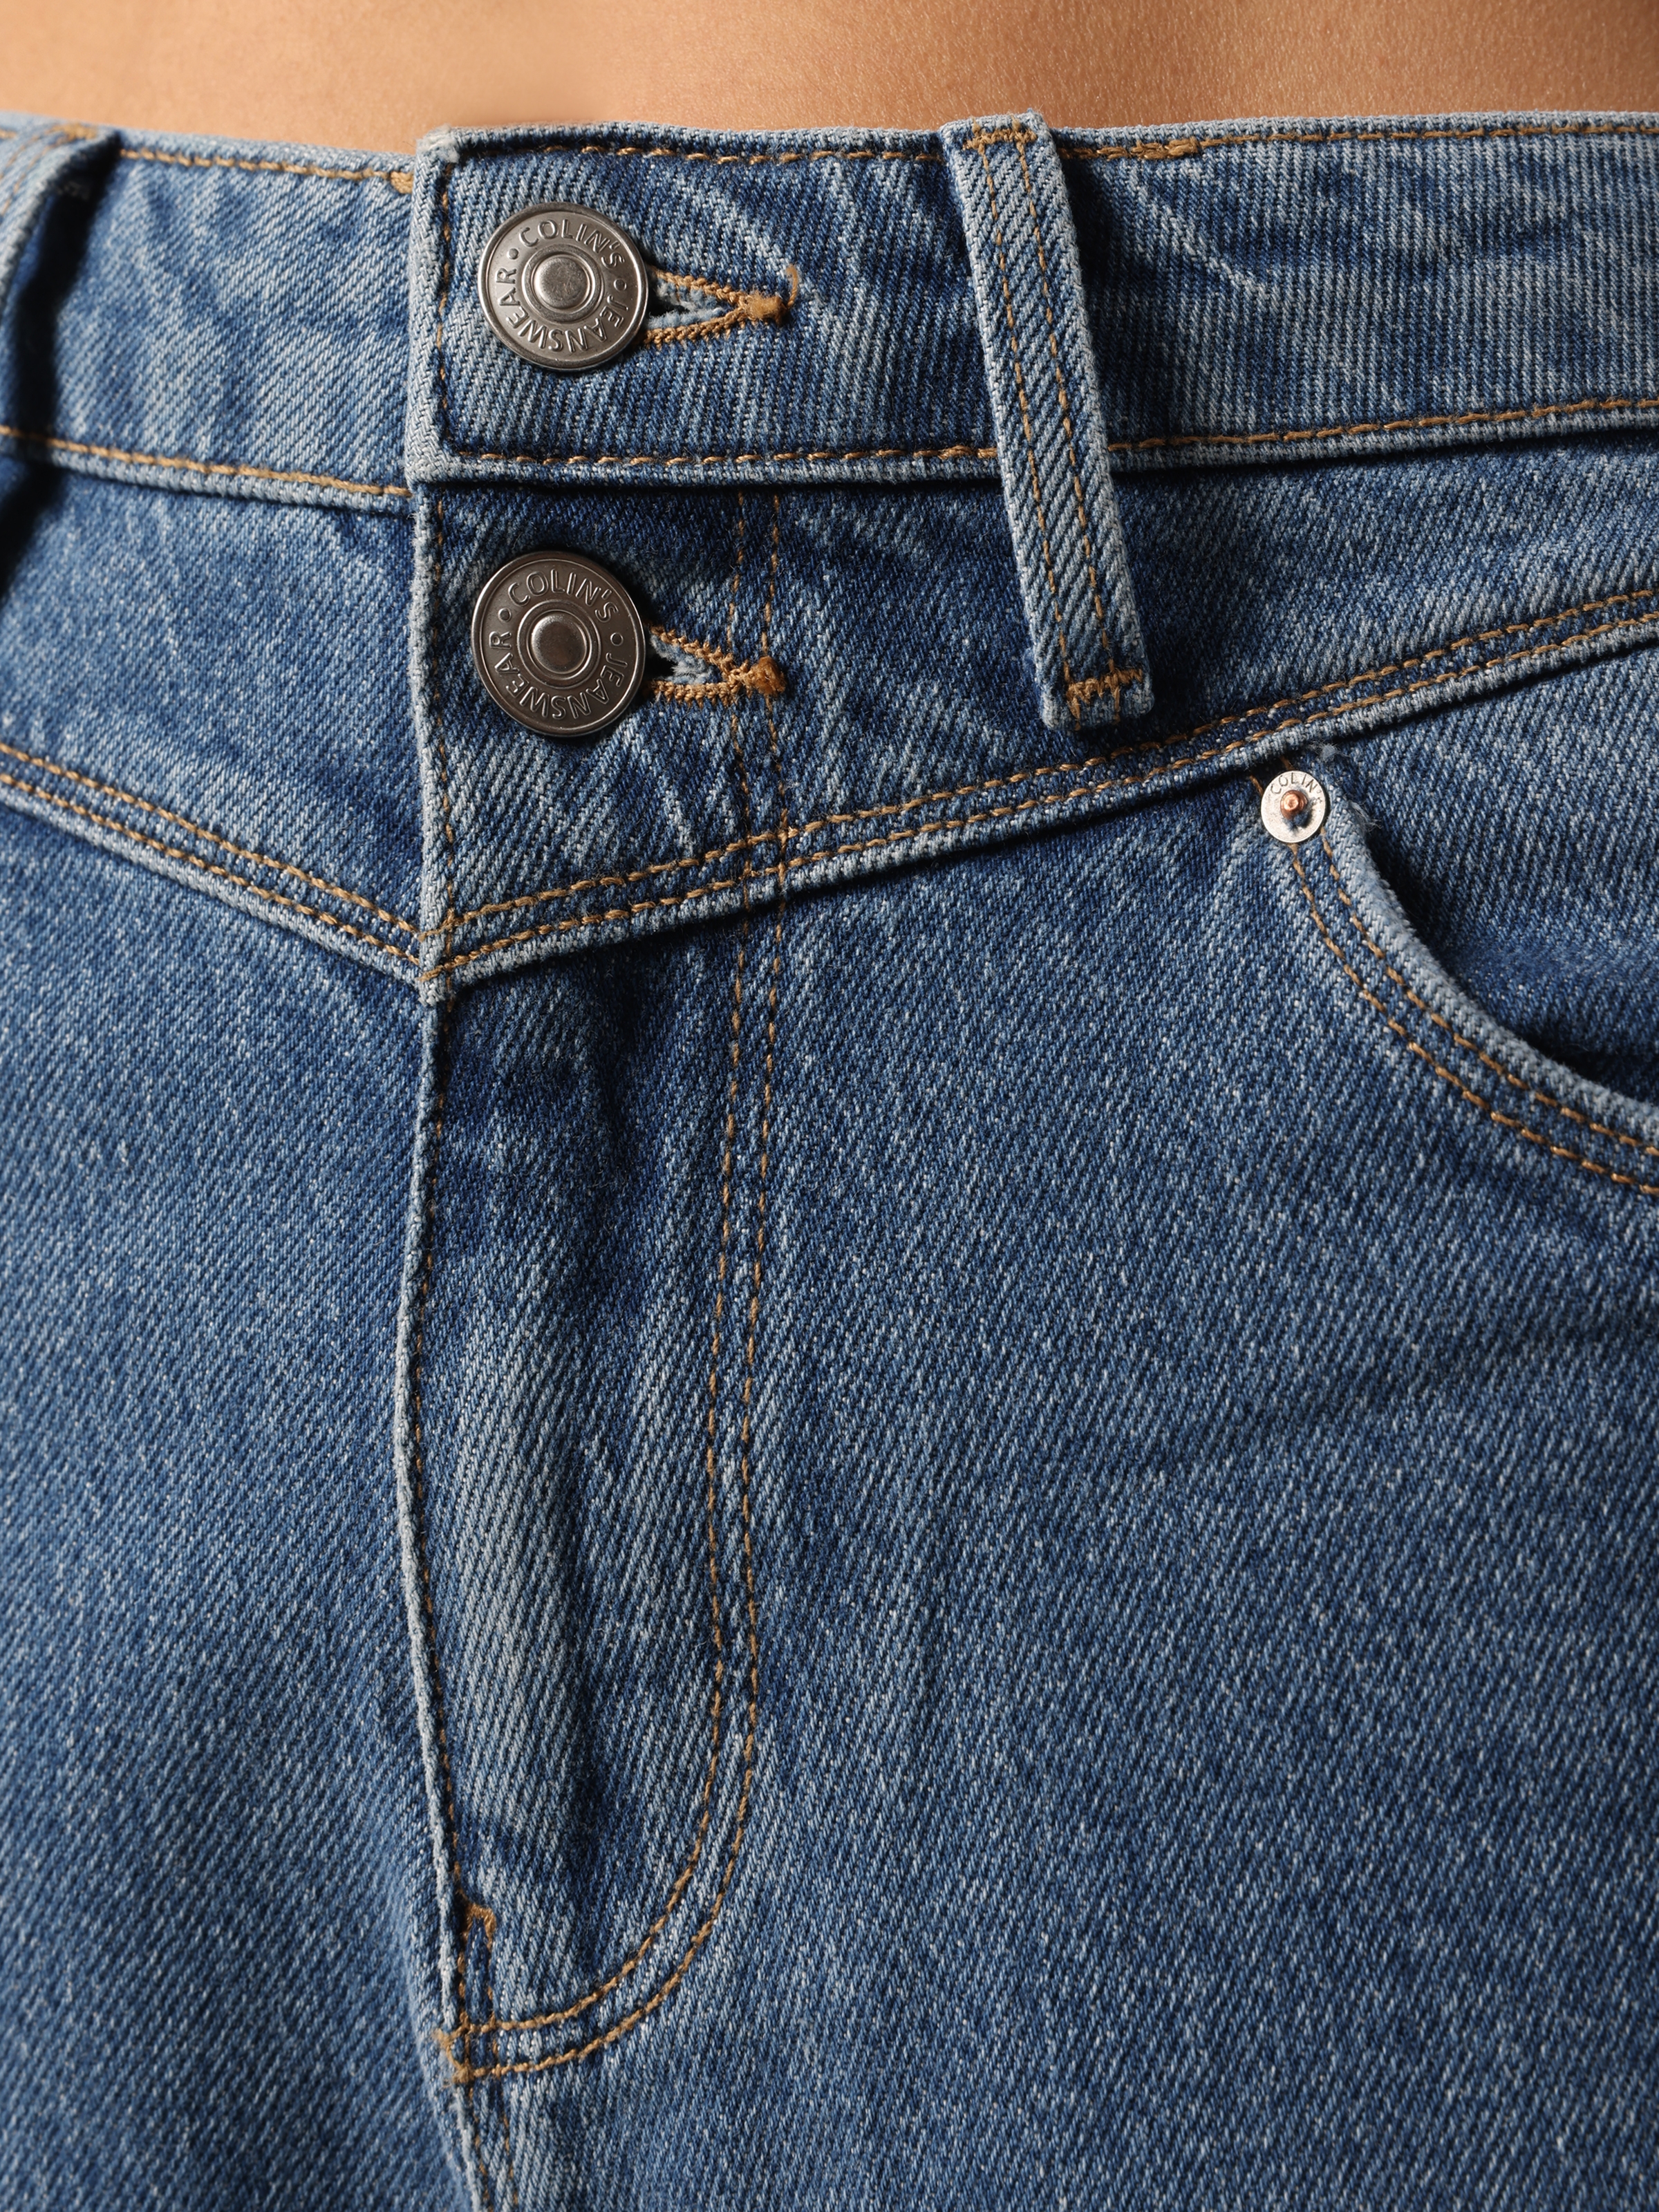 Afficher les détails de Pantalon 896 Maria Mom Fit Taille Haute Jambe Fuselée Bleu Pour Femme